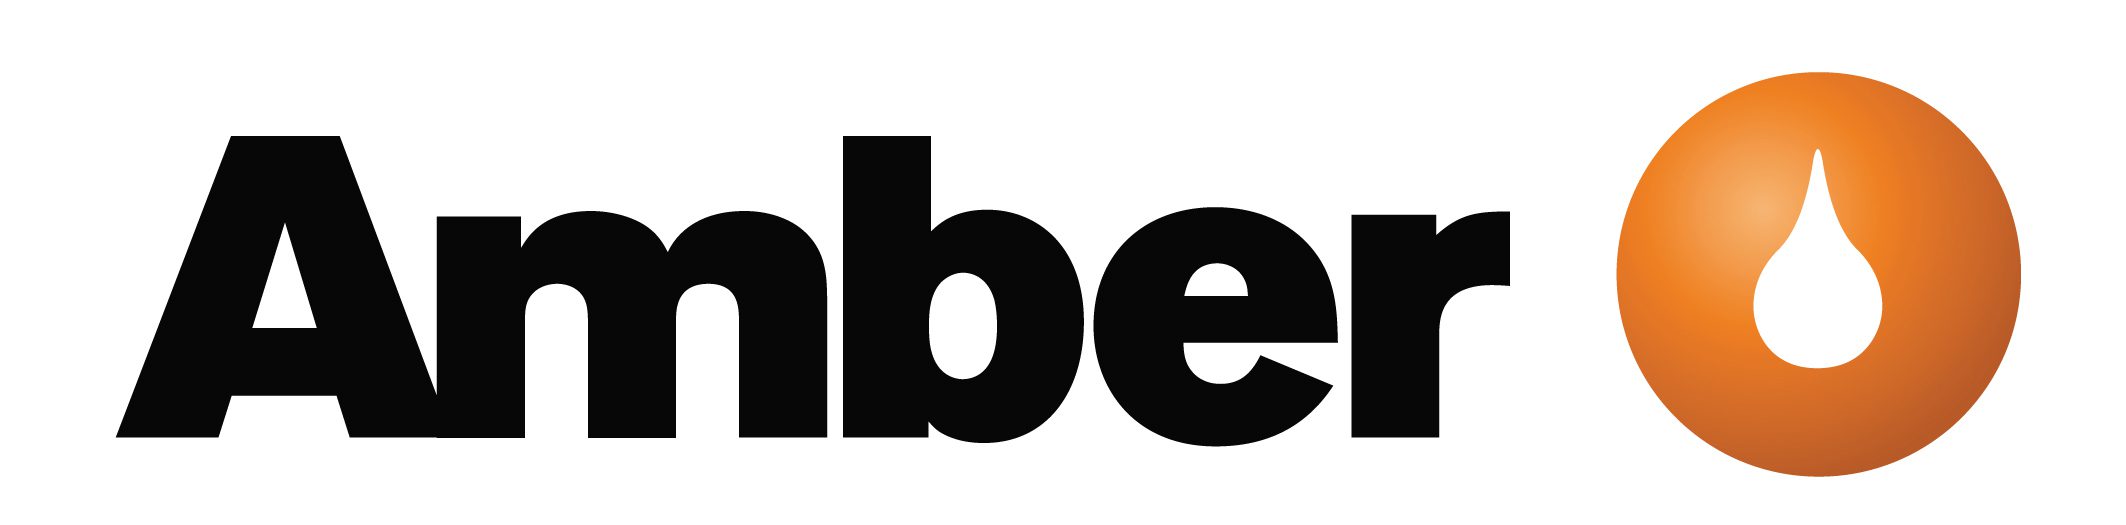 Amber Oil Logo